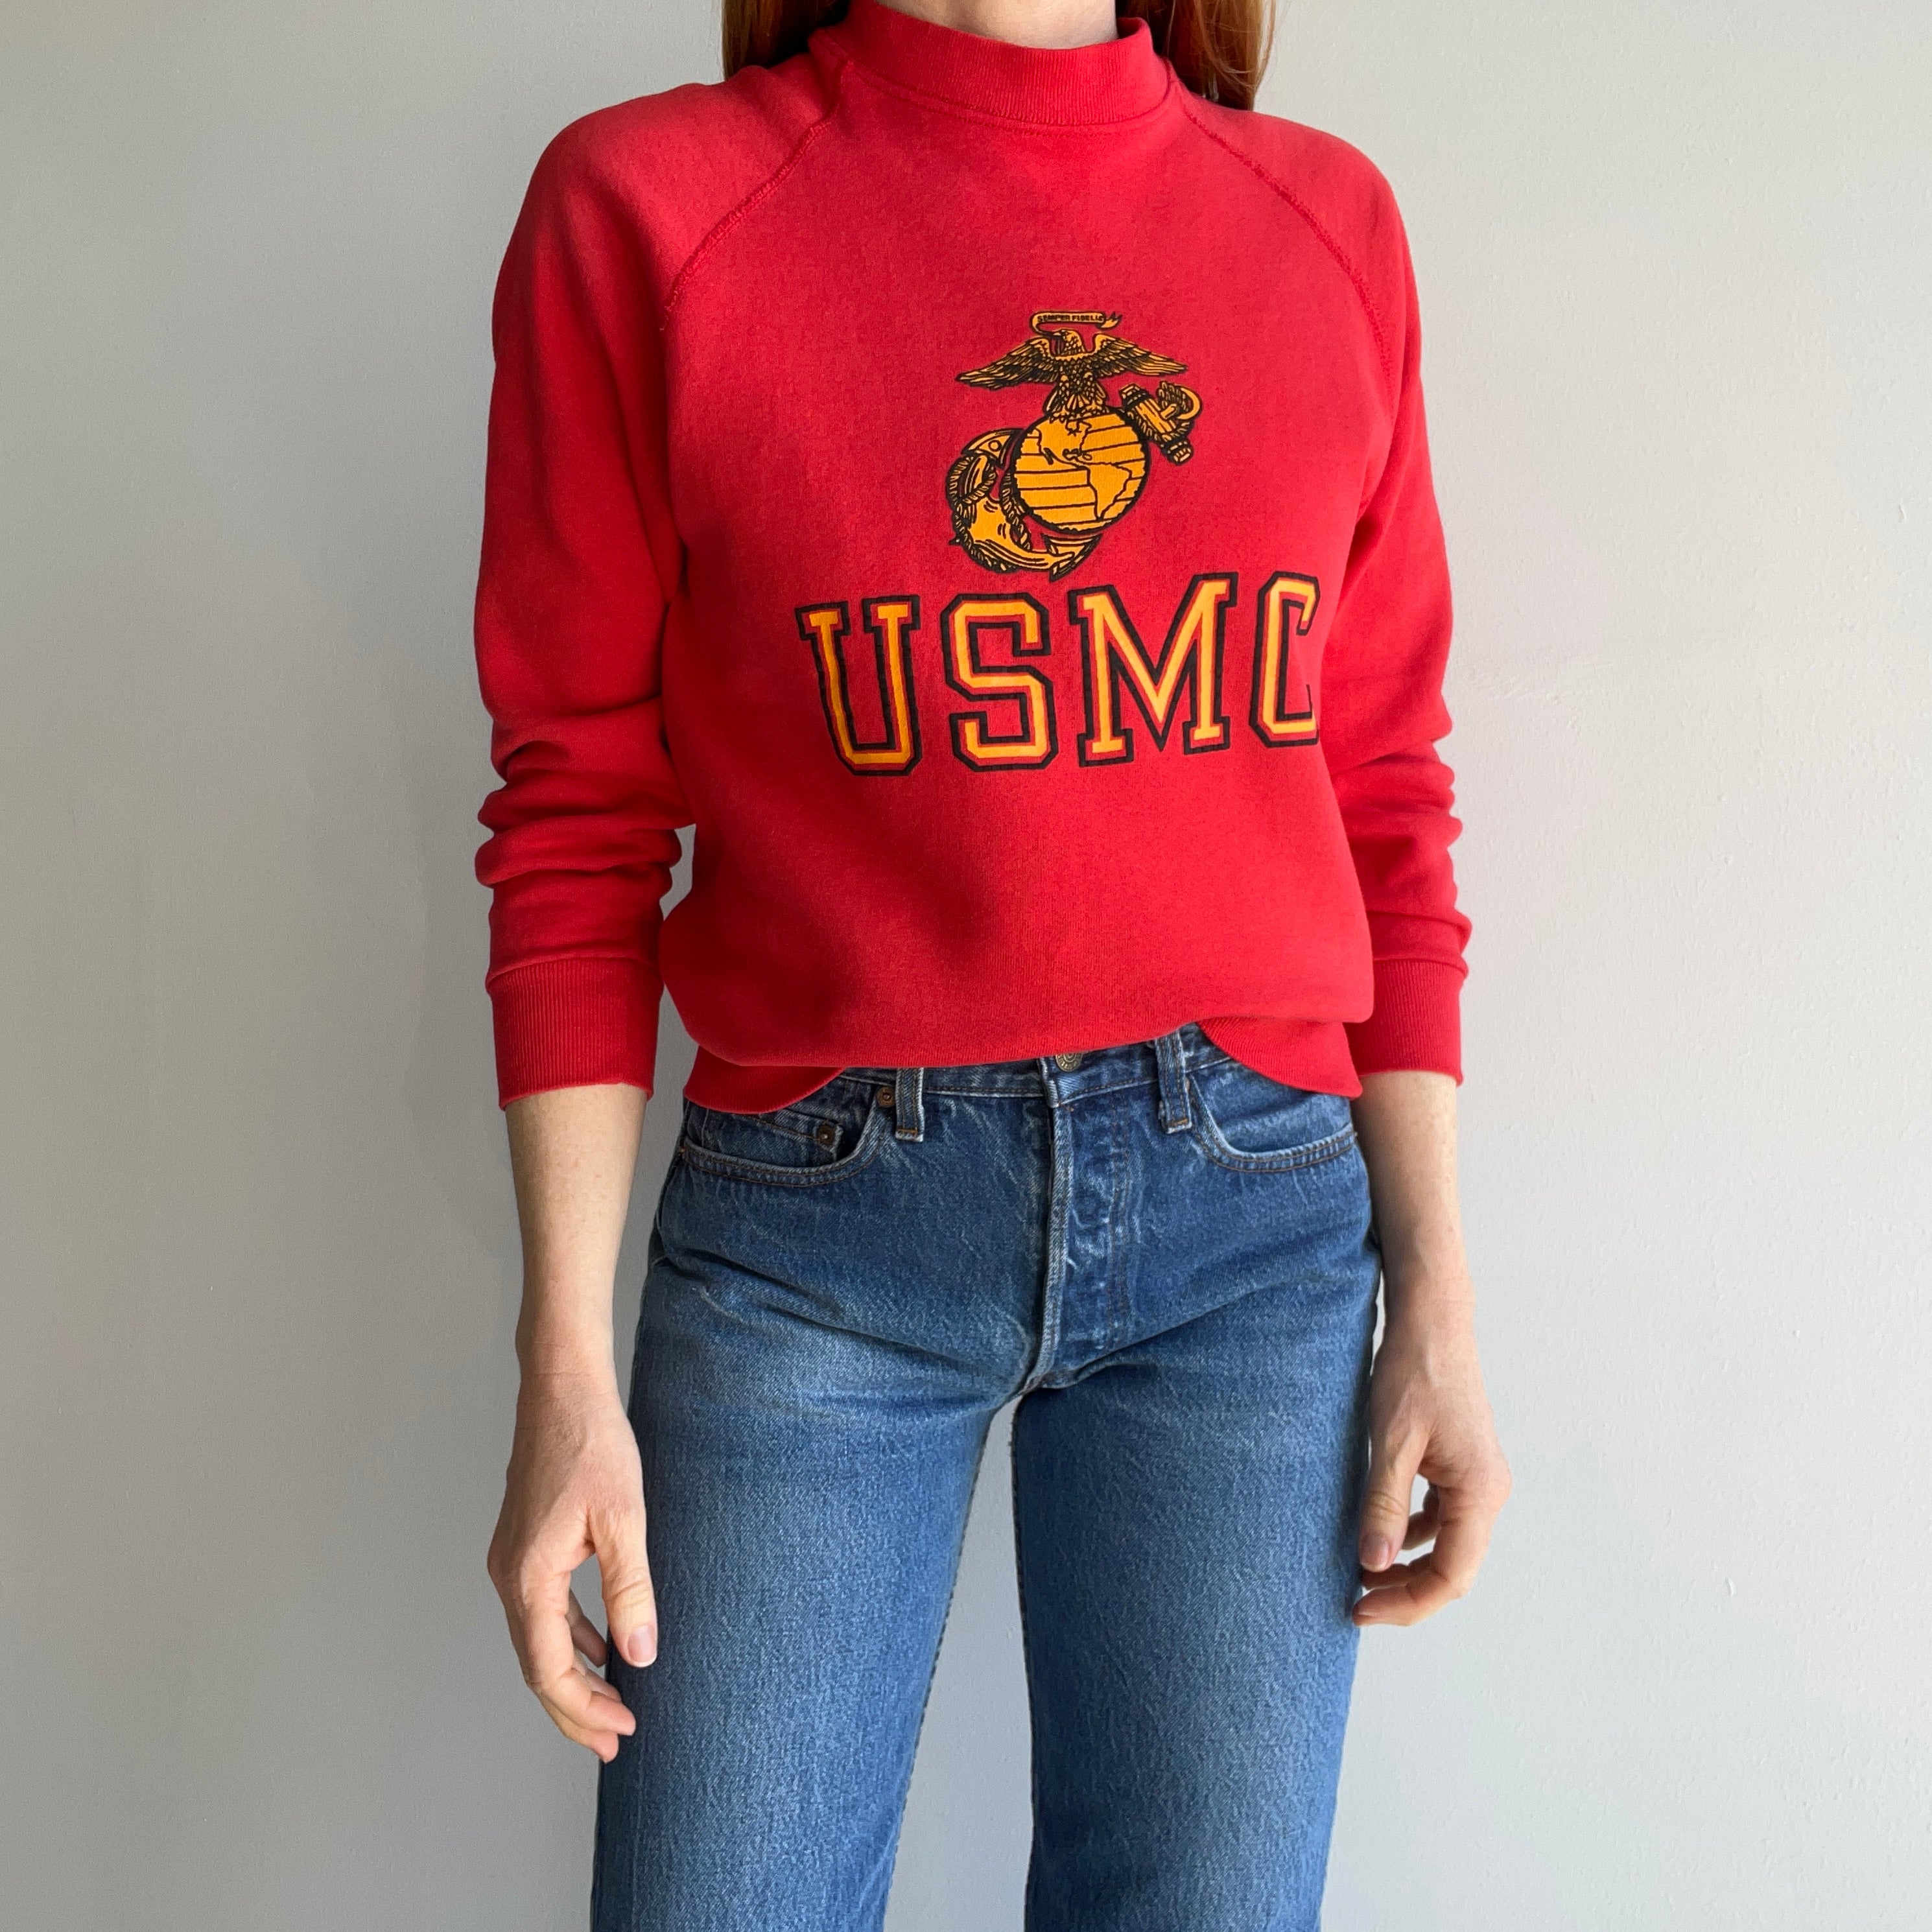 1980s USMC Smaller Sweatshirt